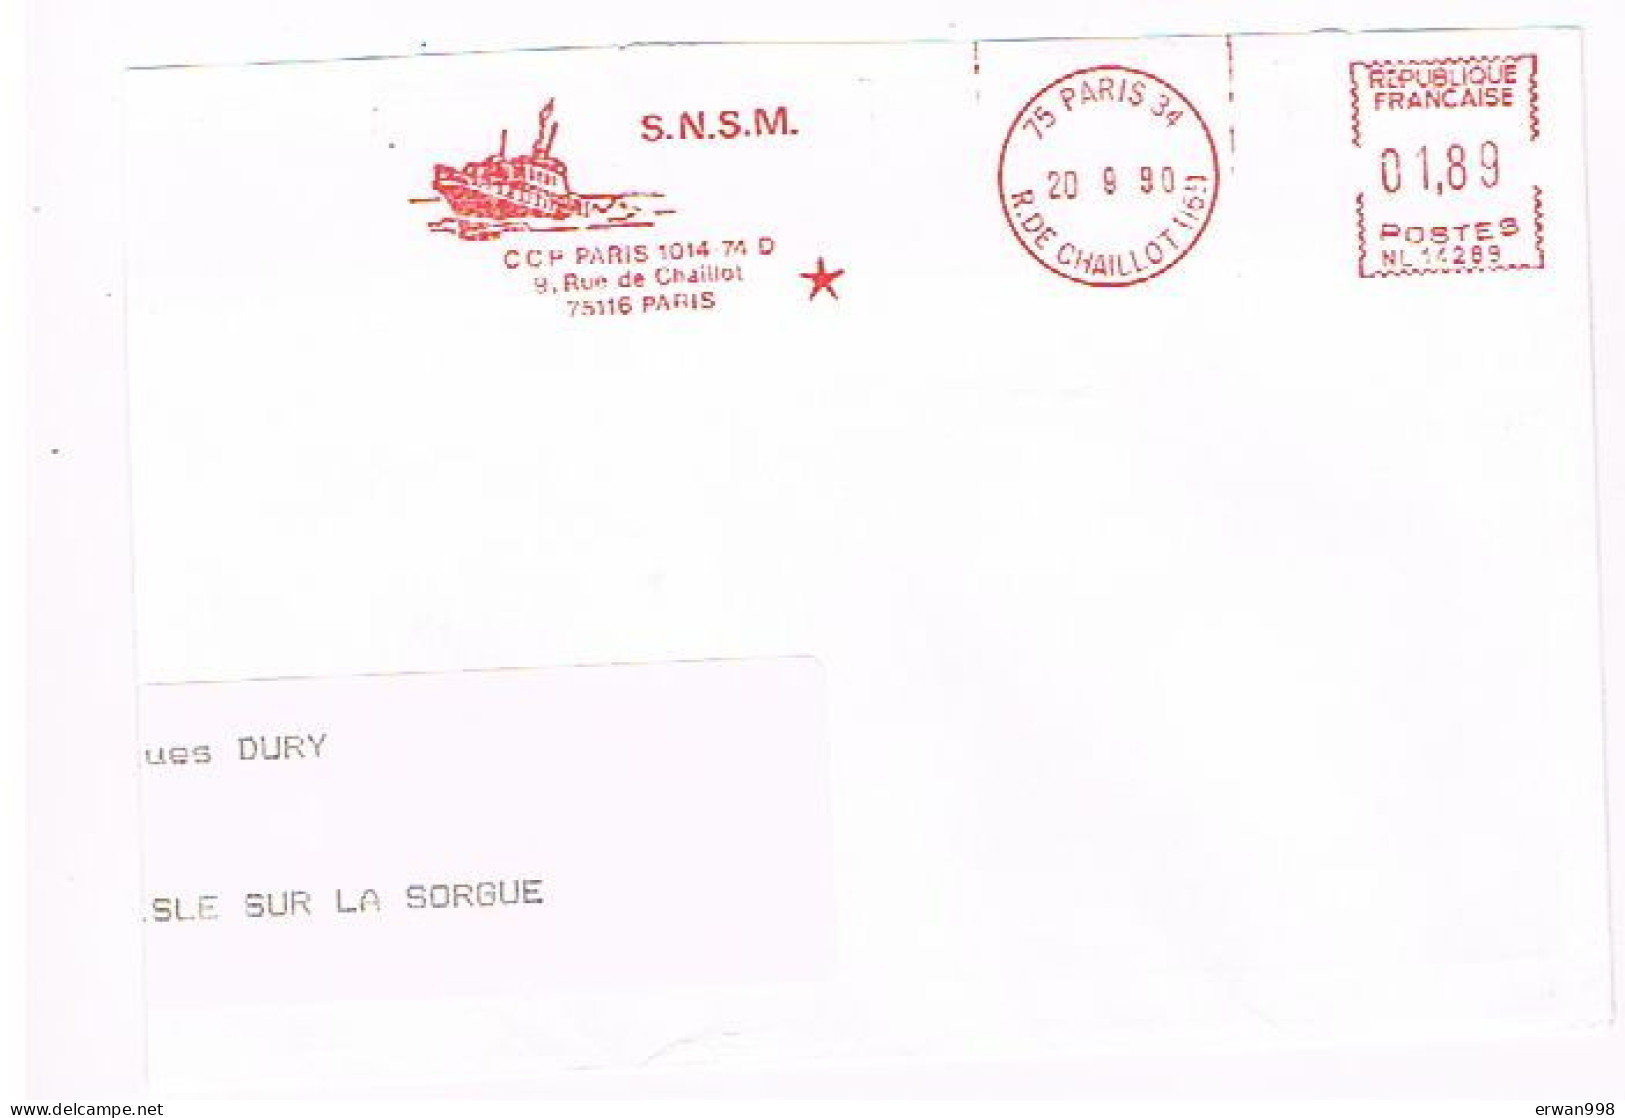 75 PARIS 34     - EMA Rouge Du 20/9/1990 S.N.S.M. (secours Maritime) Thème Bâteau  83 - Ships